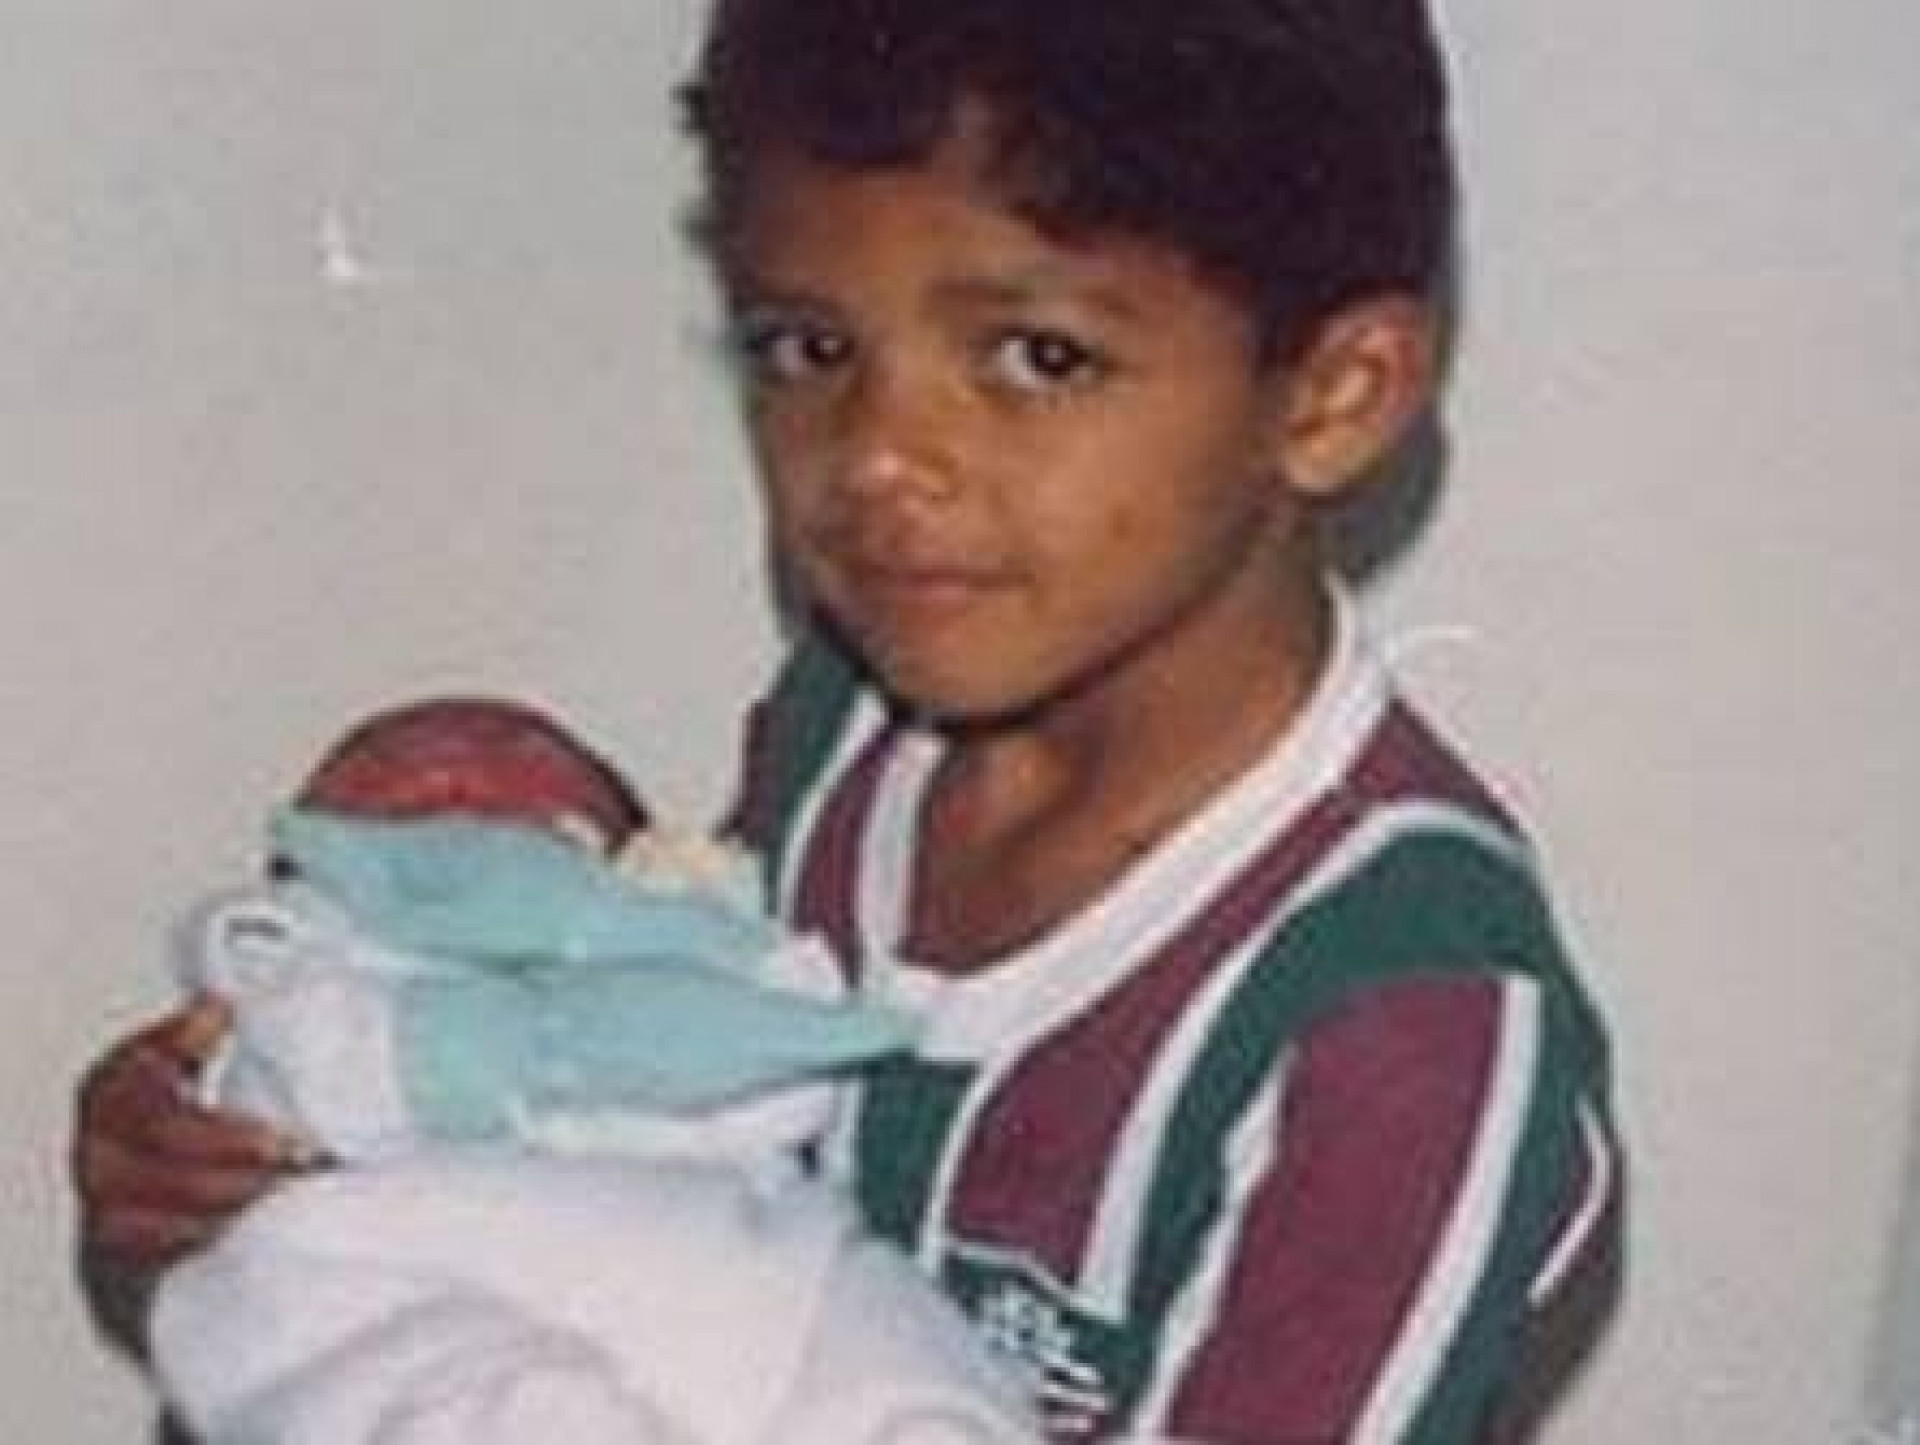 Foto de Felipe Melo com a camisa do Fluminense, quando criança, viralizou quando ele acertou com o clube - Arquivo Pessoal